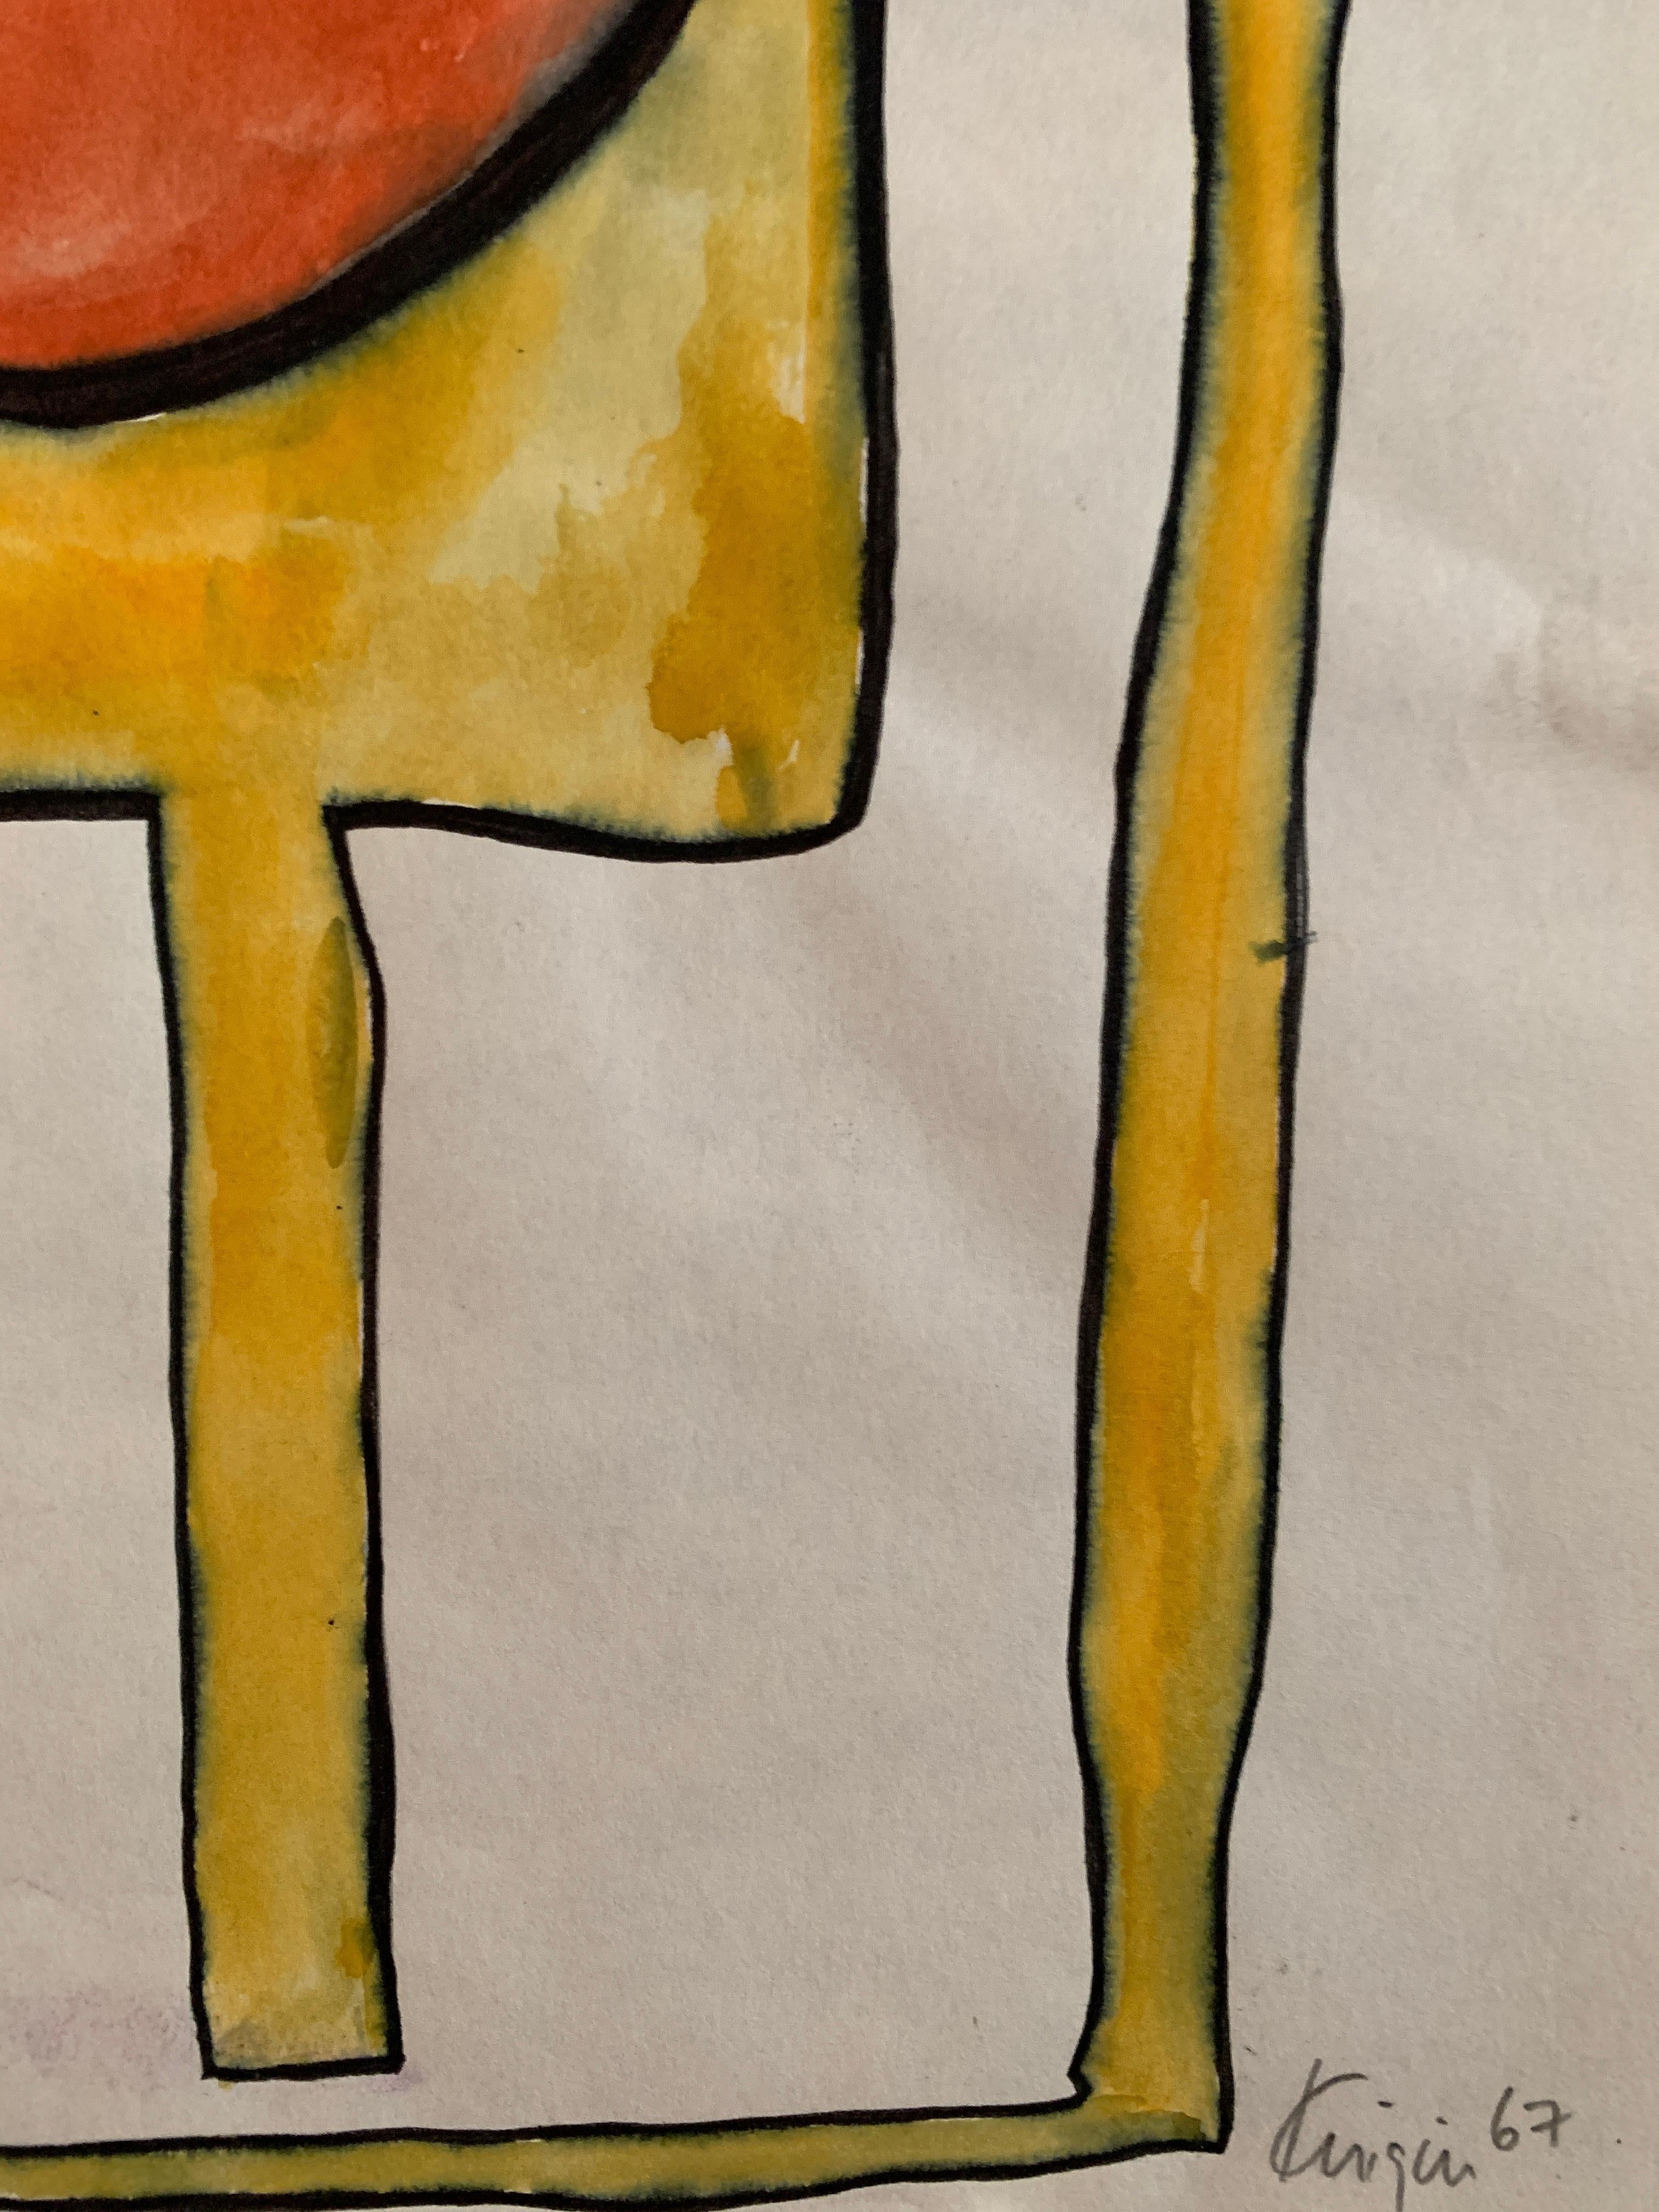 Michael Knigin
Abstrait 1 Orange et jaune
1967
Pinceau d'encre et aquarelle sur papier
8.25 